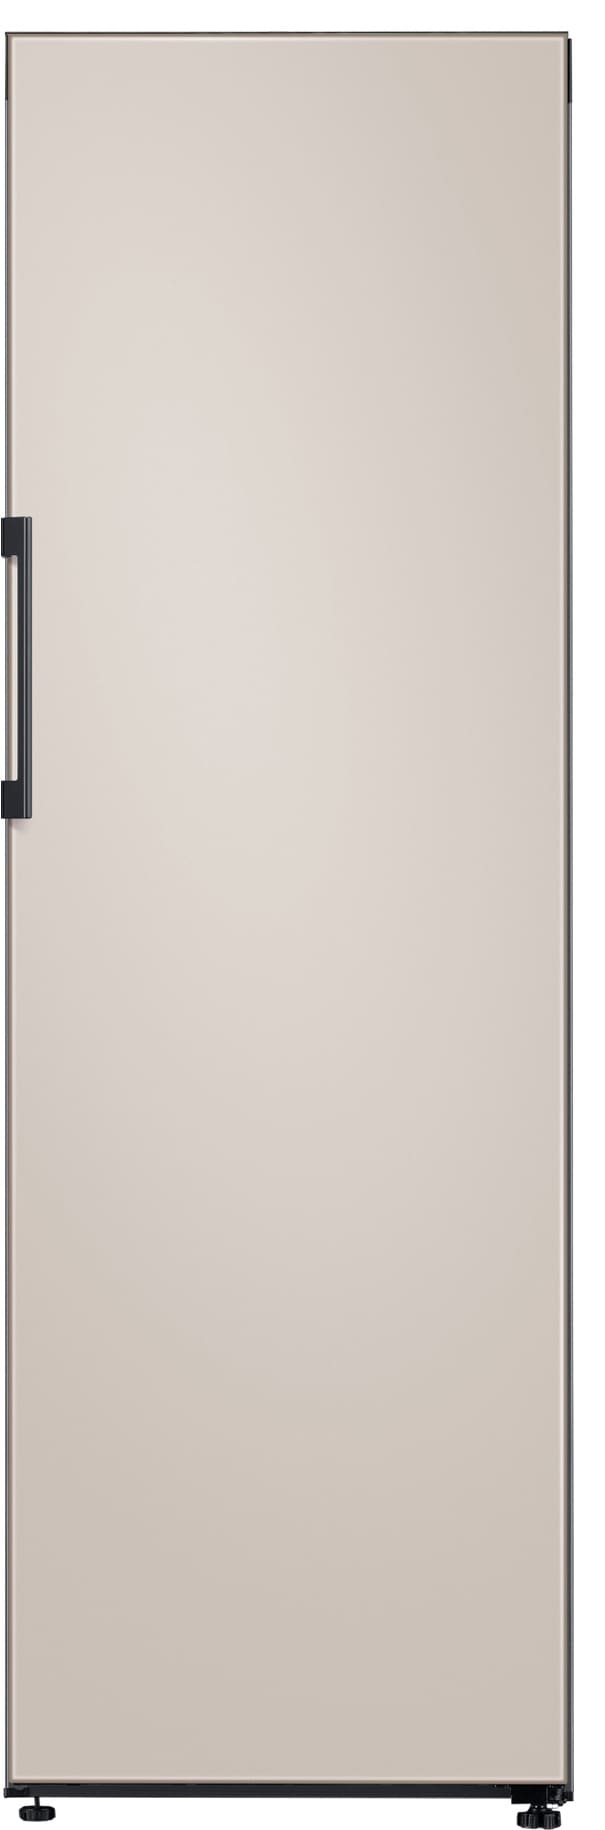 Samsung Bespoke køleskab RR39T746339/EF thumbnail